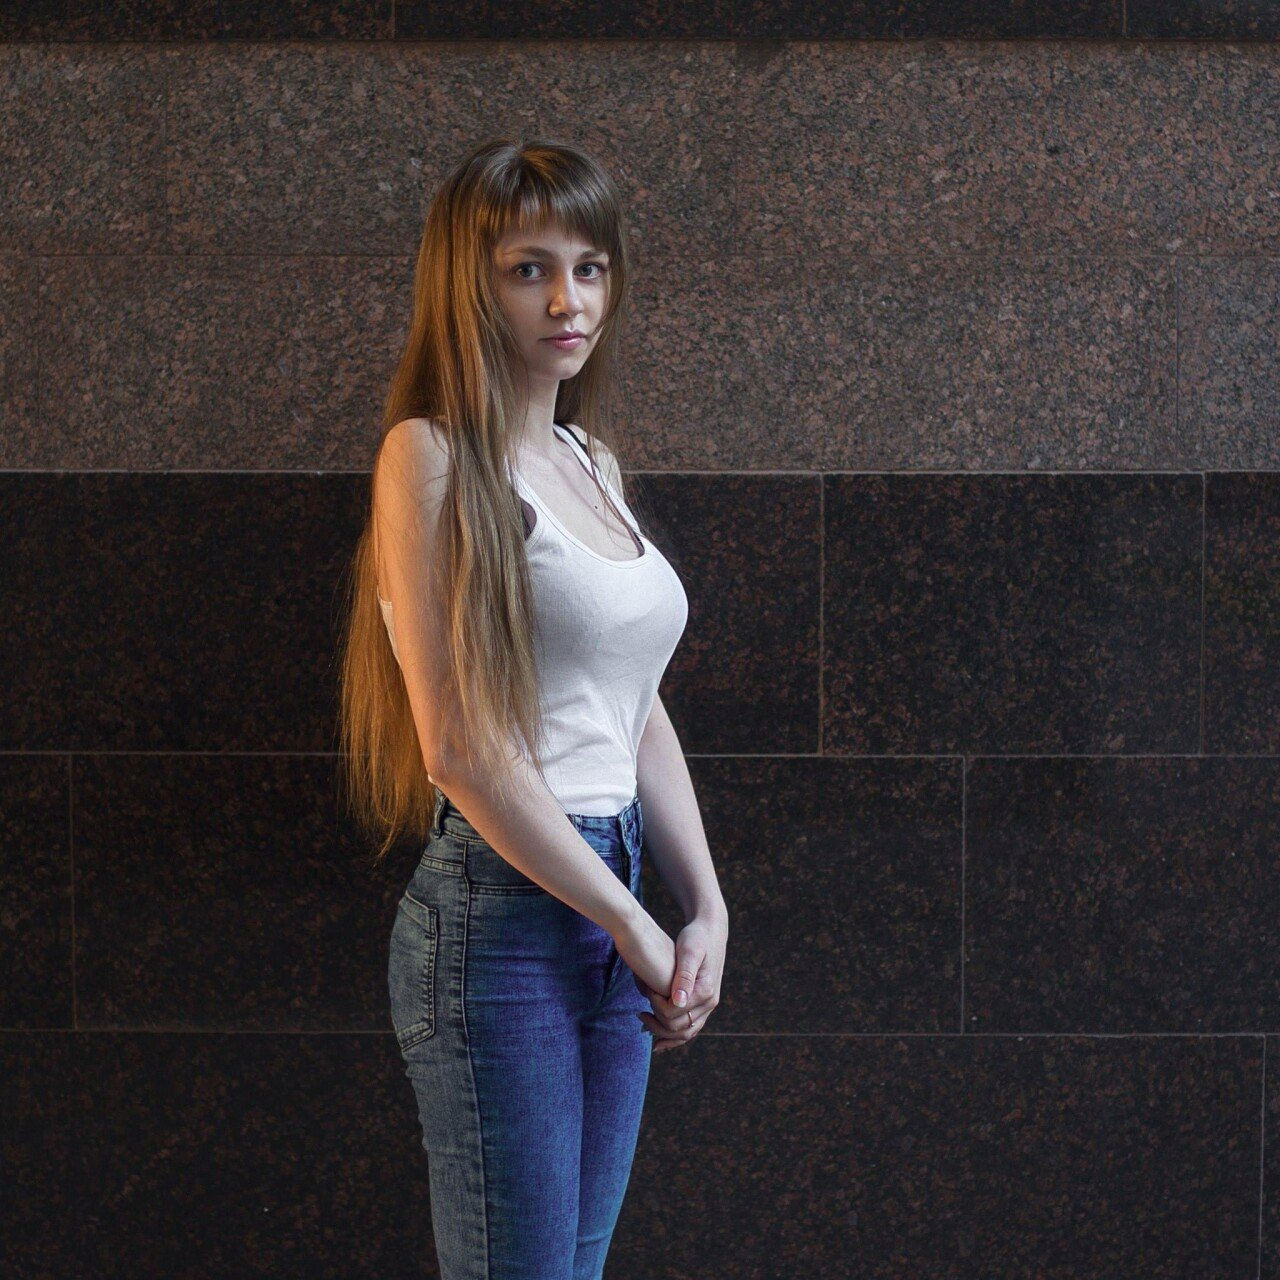 여성들의 아름다움을 찍는 러시아 사진작가 타티야나